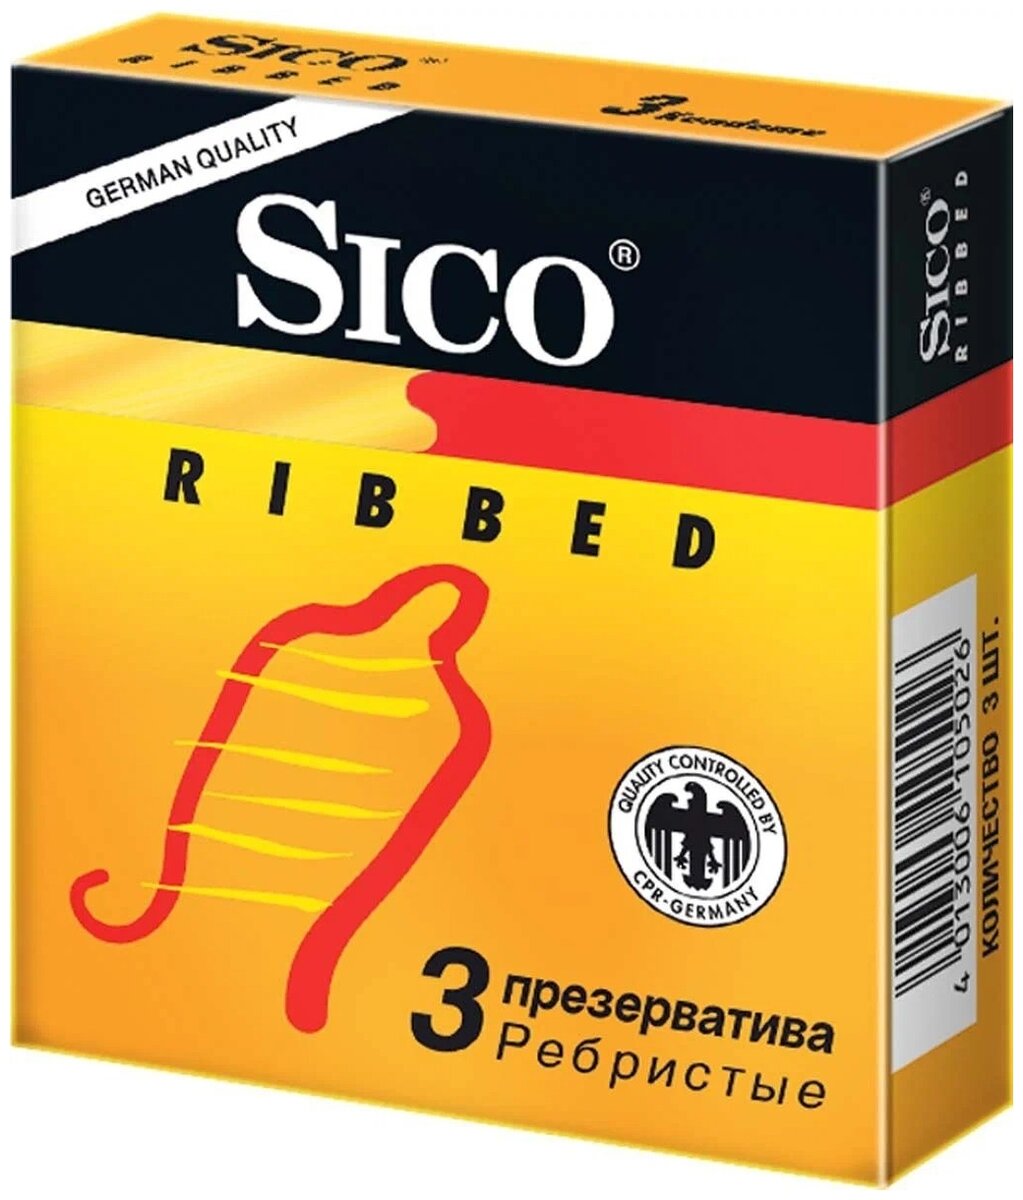 Презервативы Sico Ribbed.